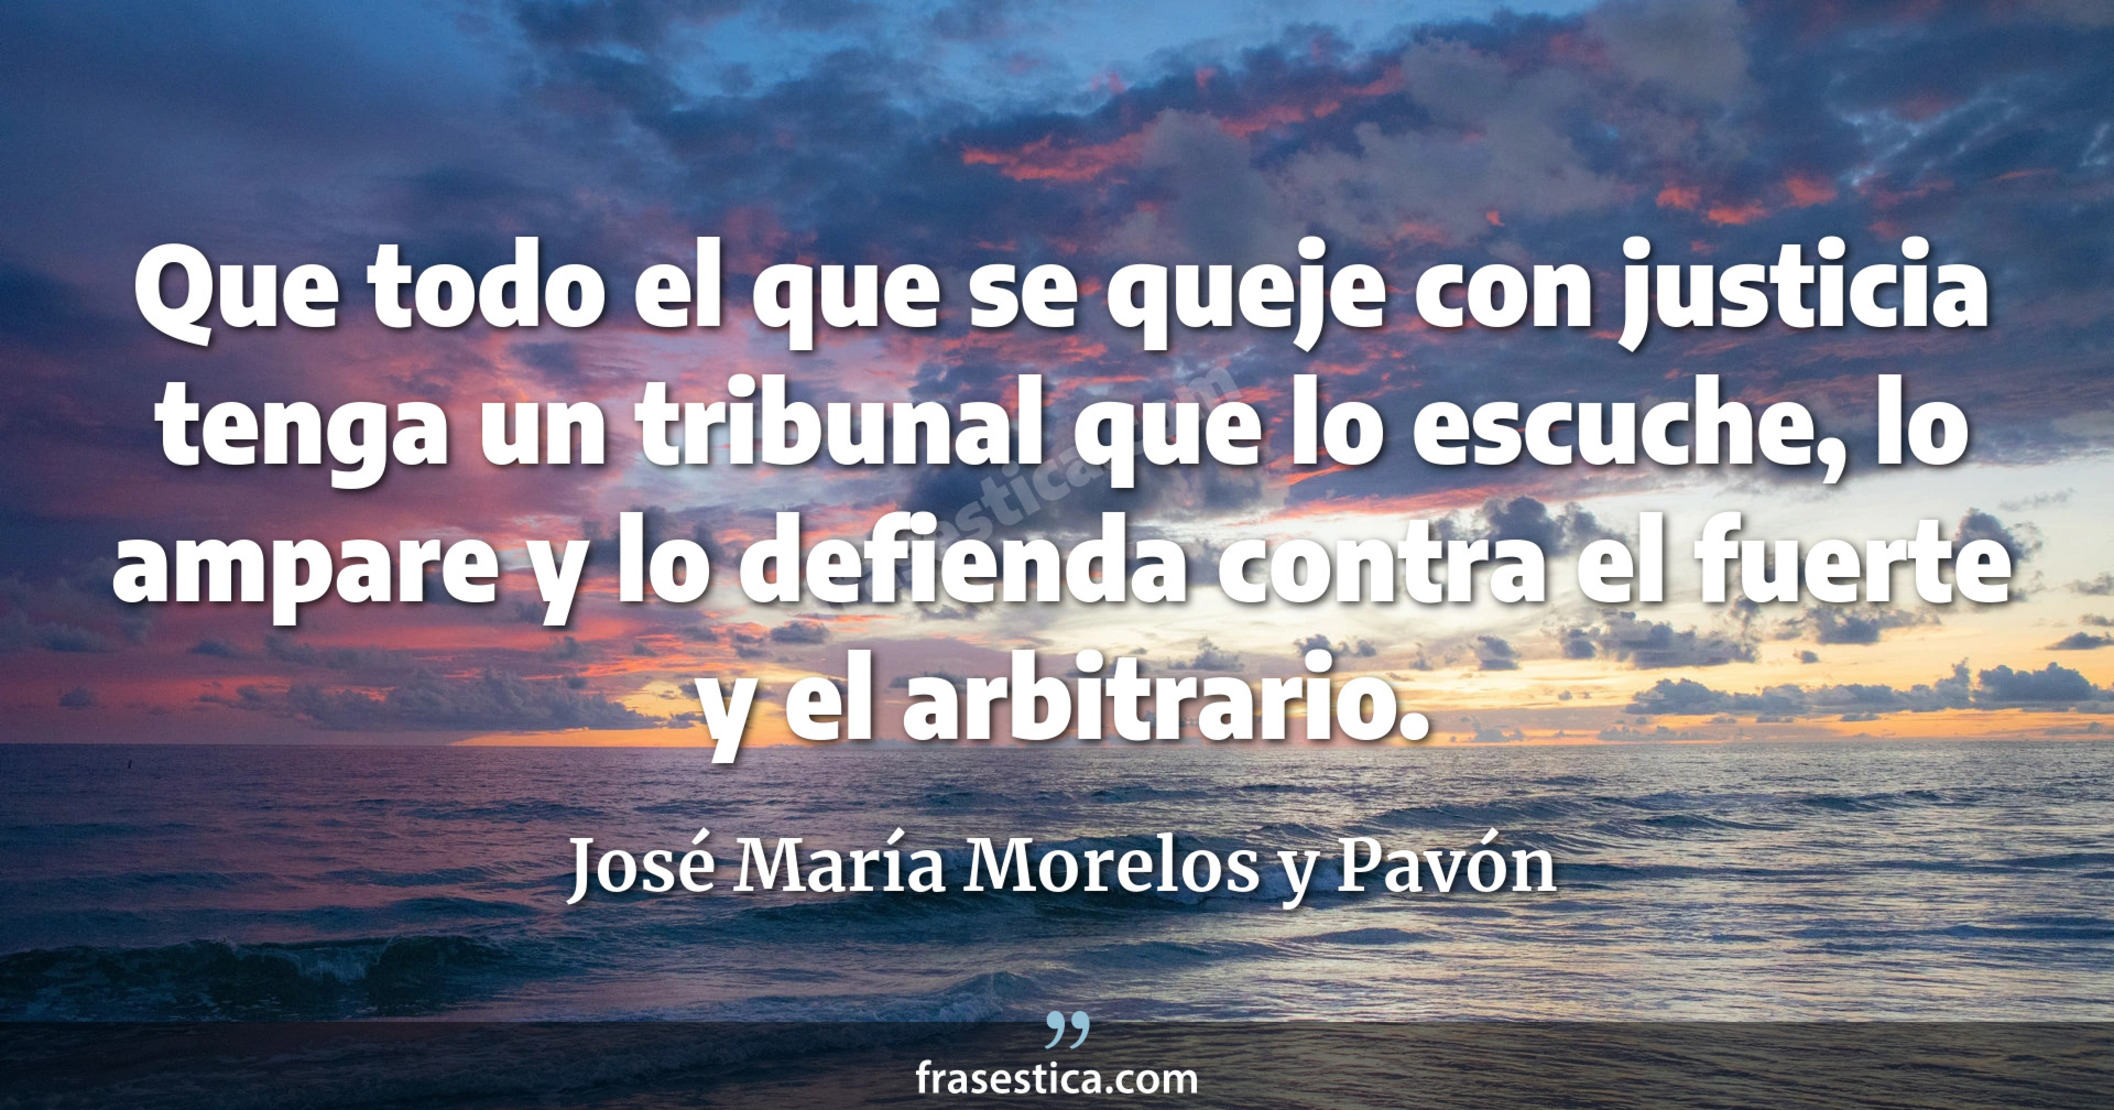 Que todo el que se queje con justicia tenga un tribunal que lo escuche, lo ampare y lo defienda contra el fuerte y el arbitrario. - José María Morelos y Pavón